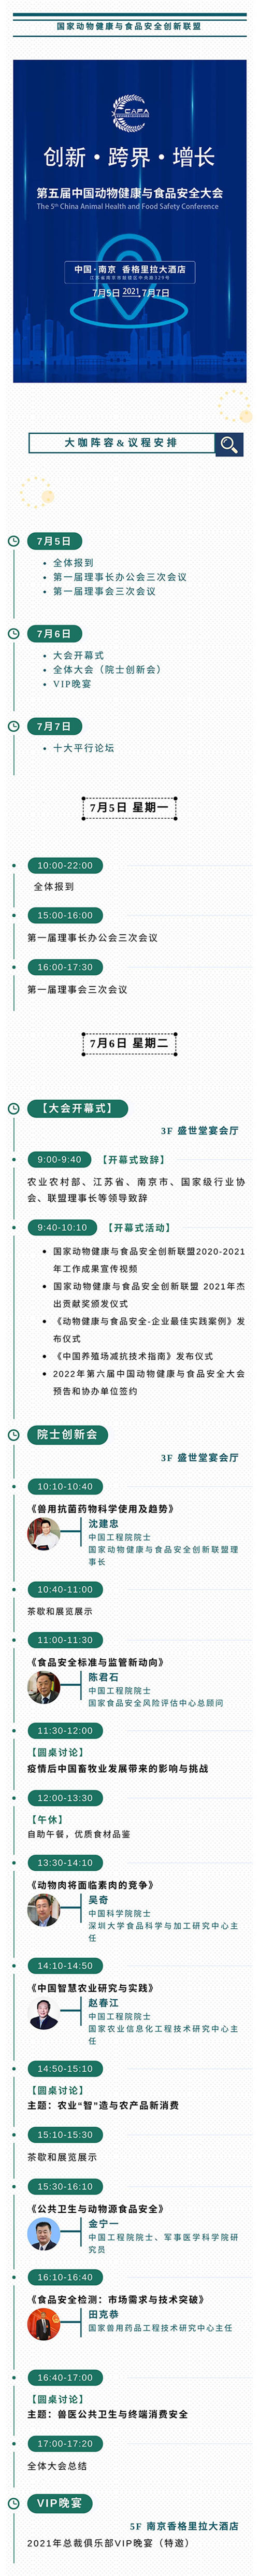 六位院士领衔千人大会！第五届中国动物健康与食品安全大会日程安排&大咖阵容重磅发布